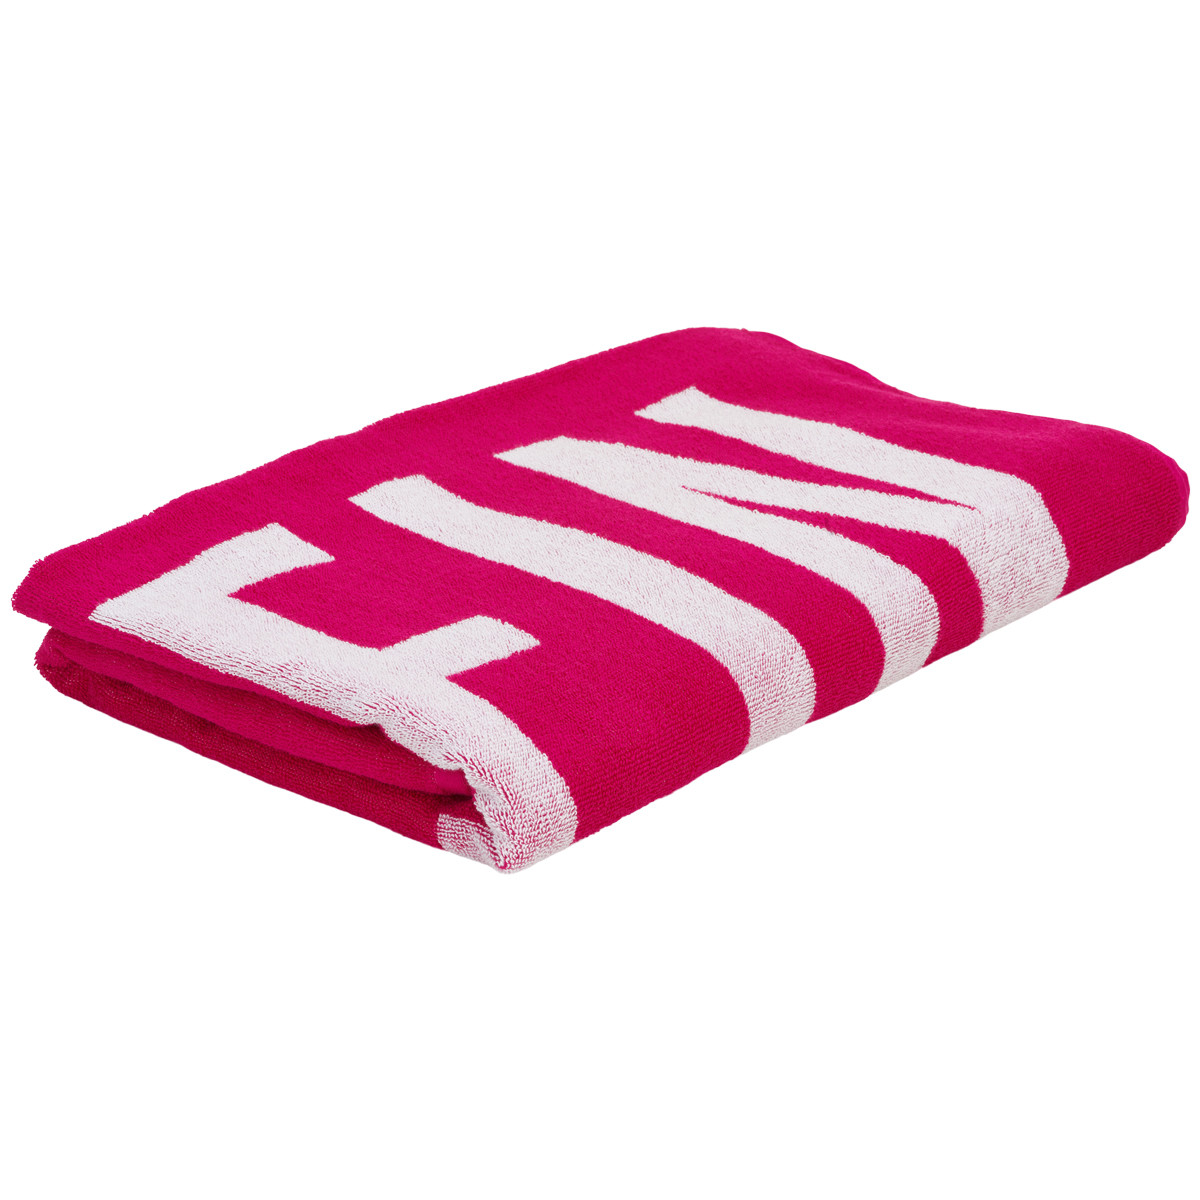 Calvin Klein Lingeri Håndklæde 00089 T01 Royal Pink, Størrelse: ONESIZE, Farve: Royal Pink, Dame